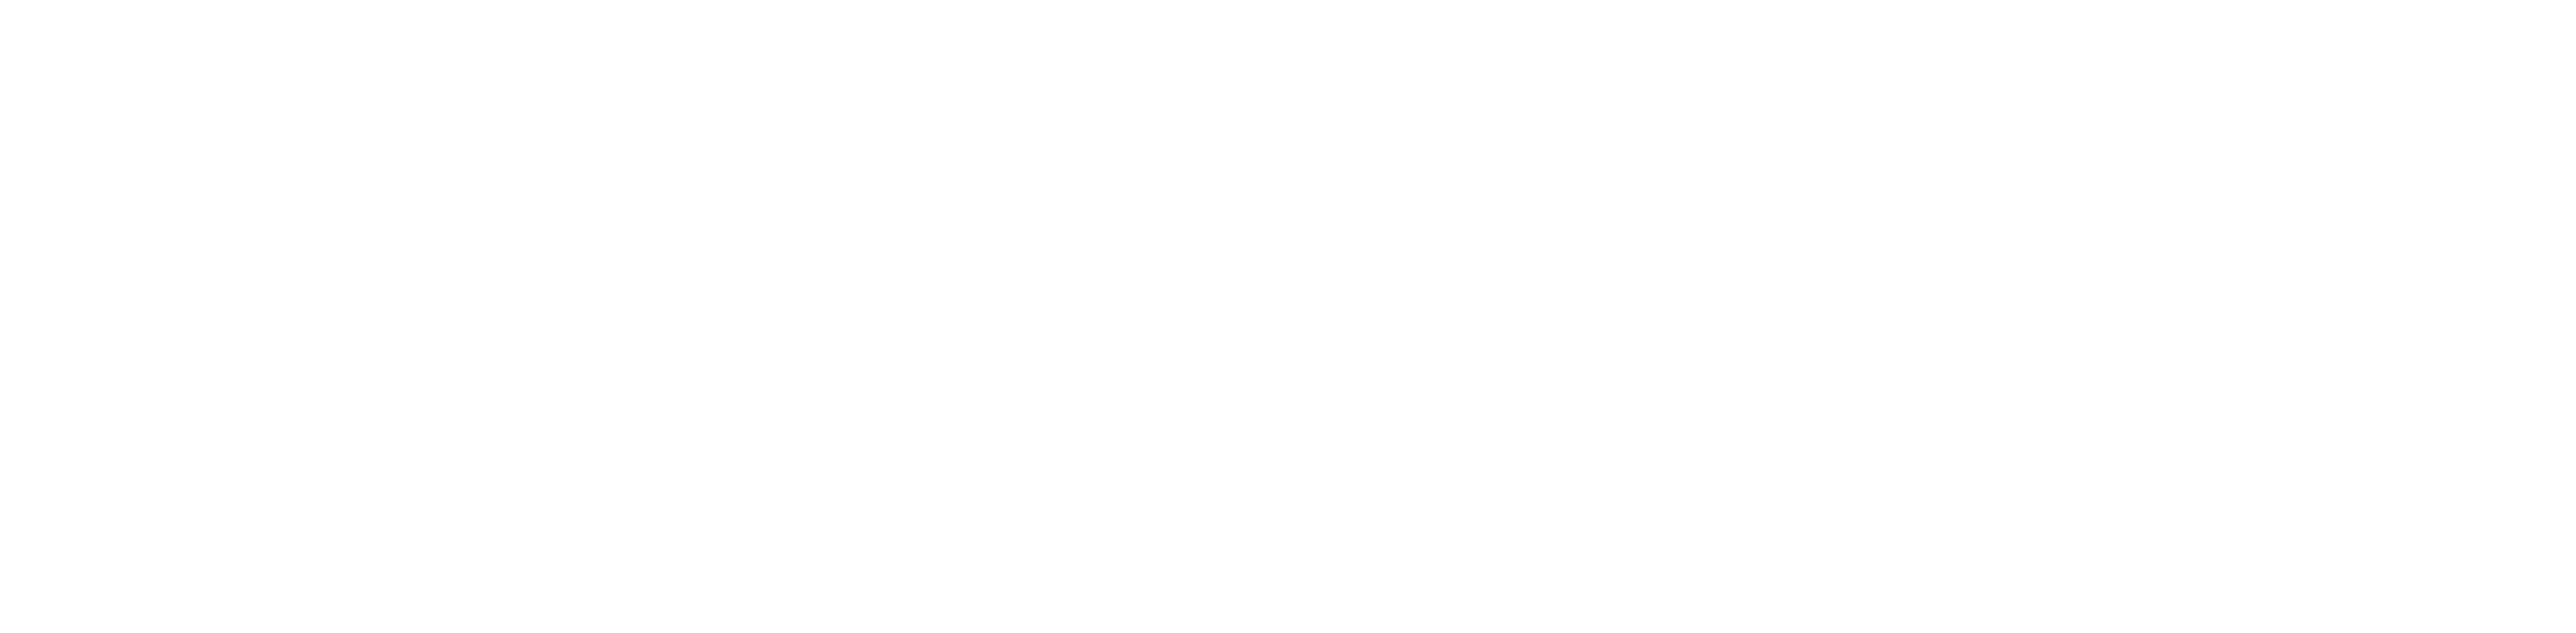 TFCC white logo